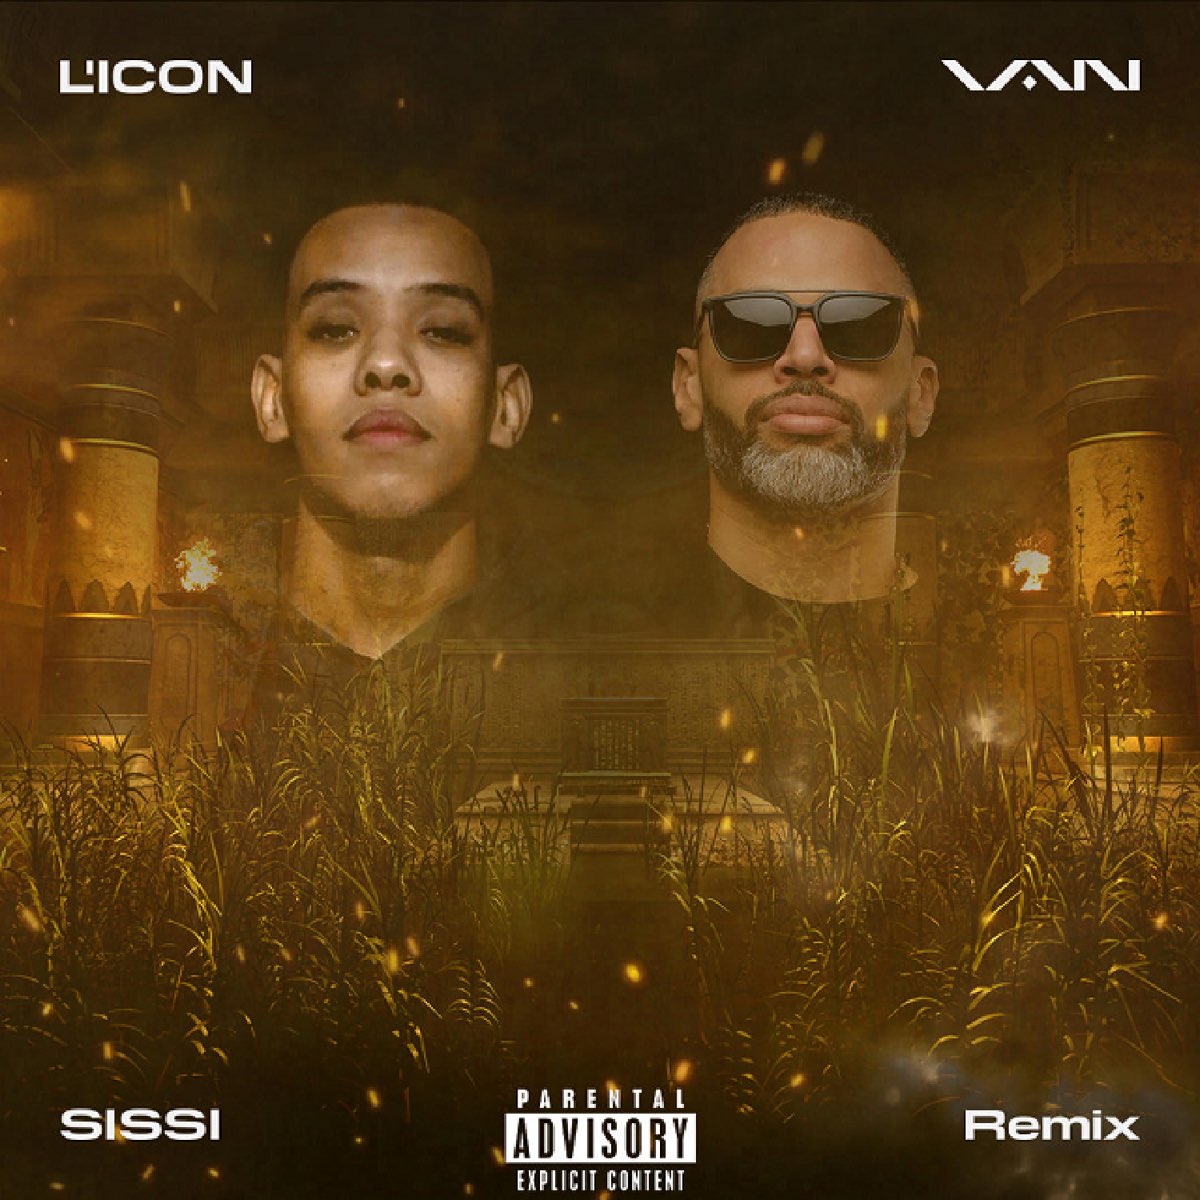 SISSI (Remix) [feat. L'ICON] - Single – Album par VAN – Apple Music